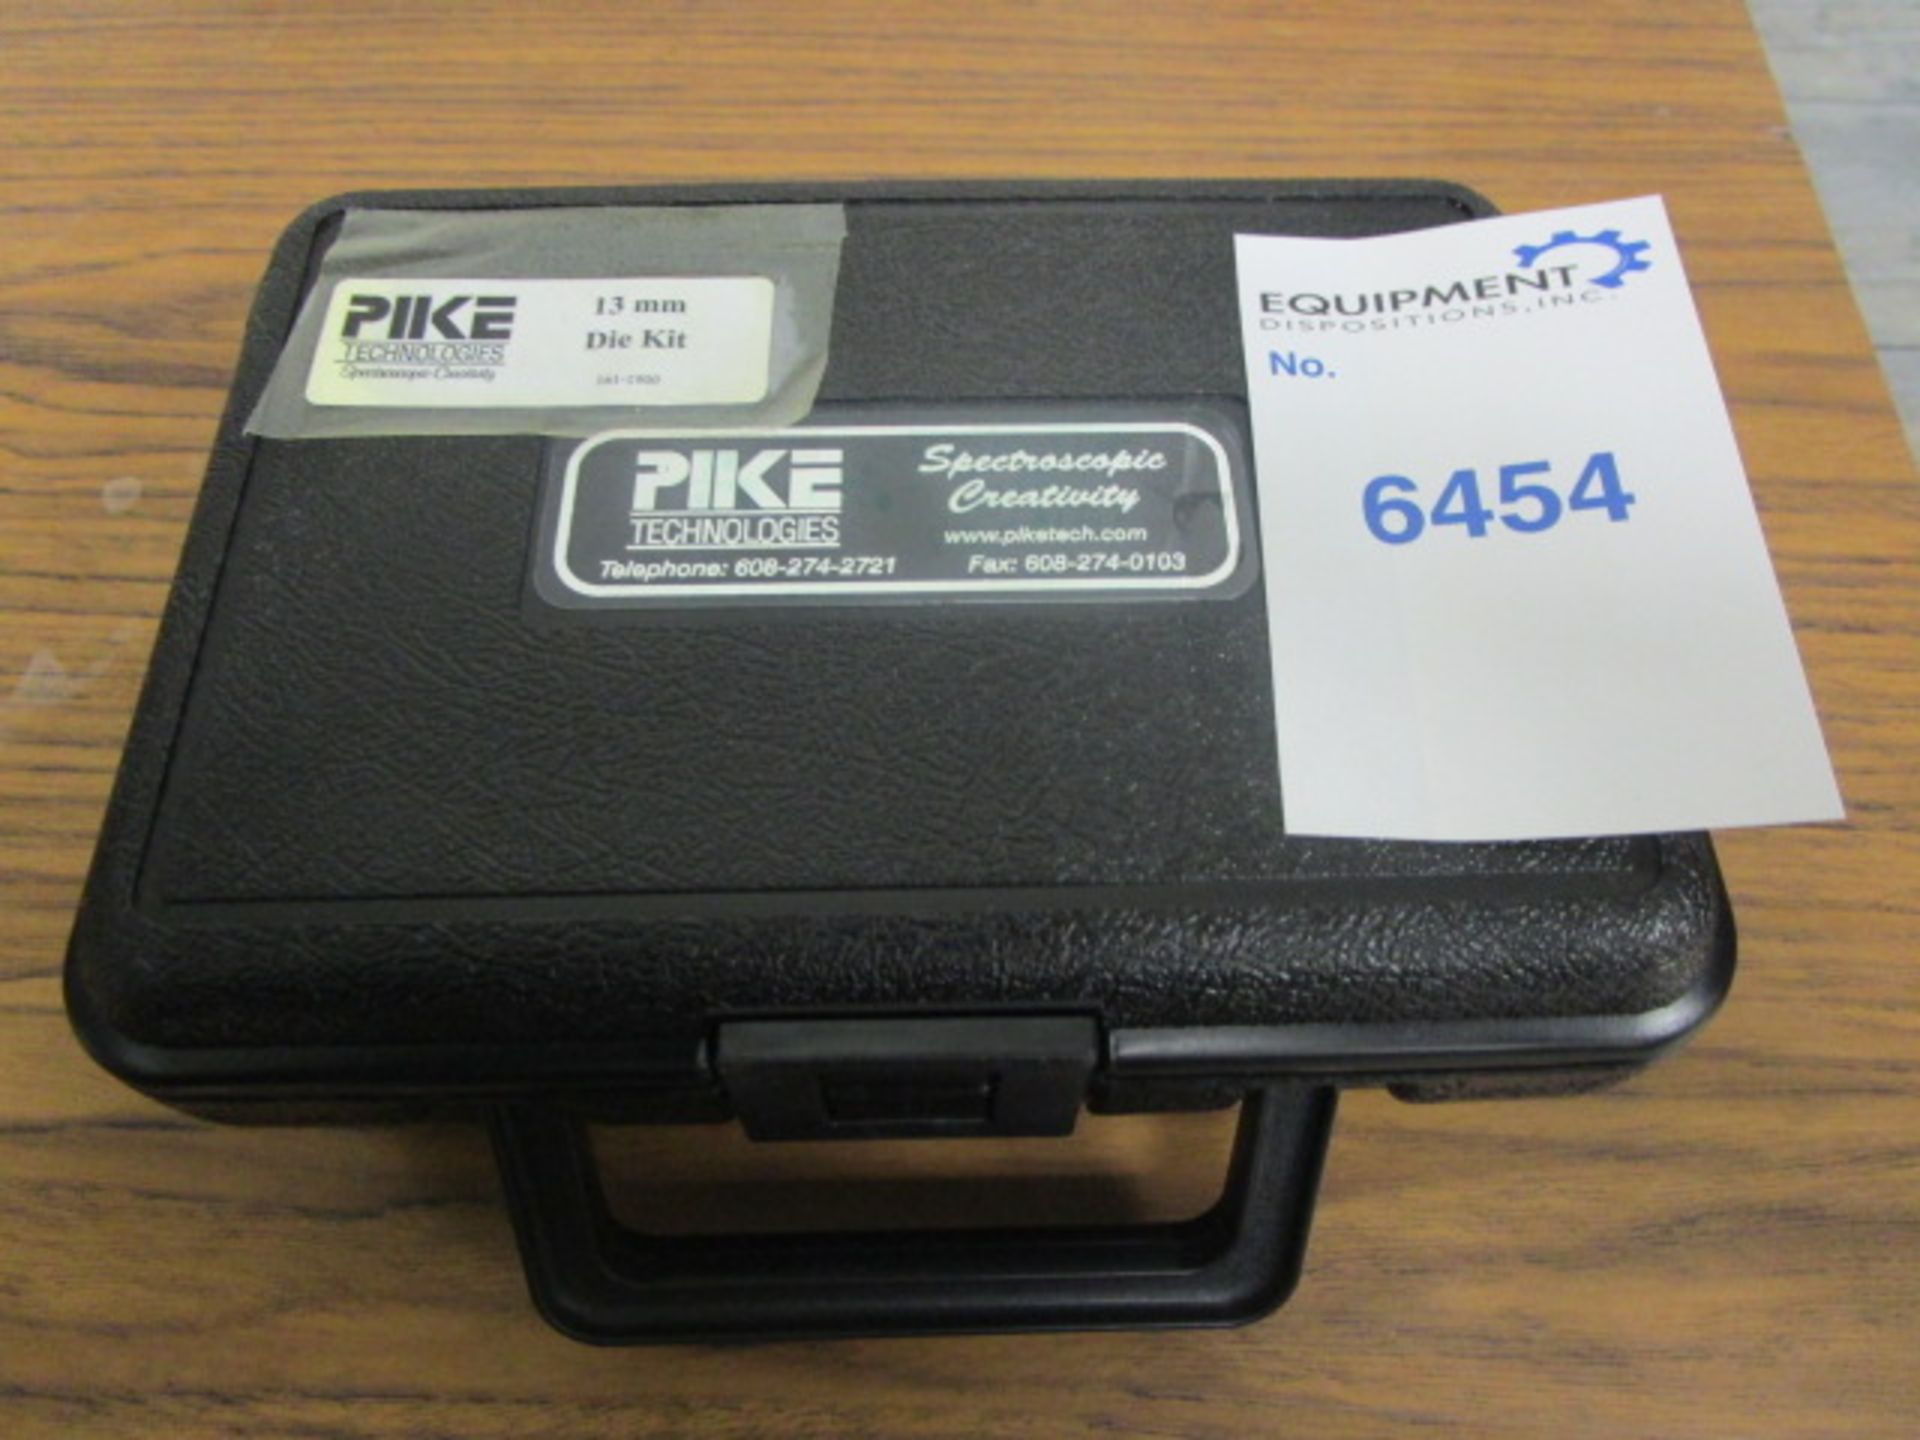 PIKE Technologies 13mm Die Kit